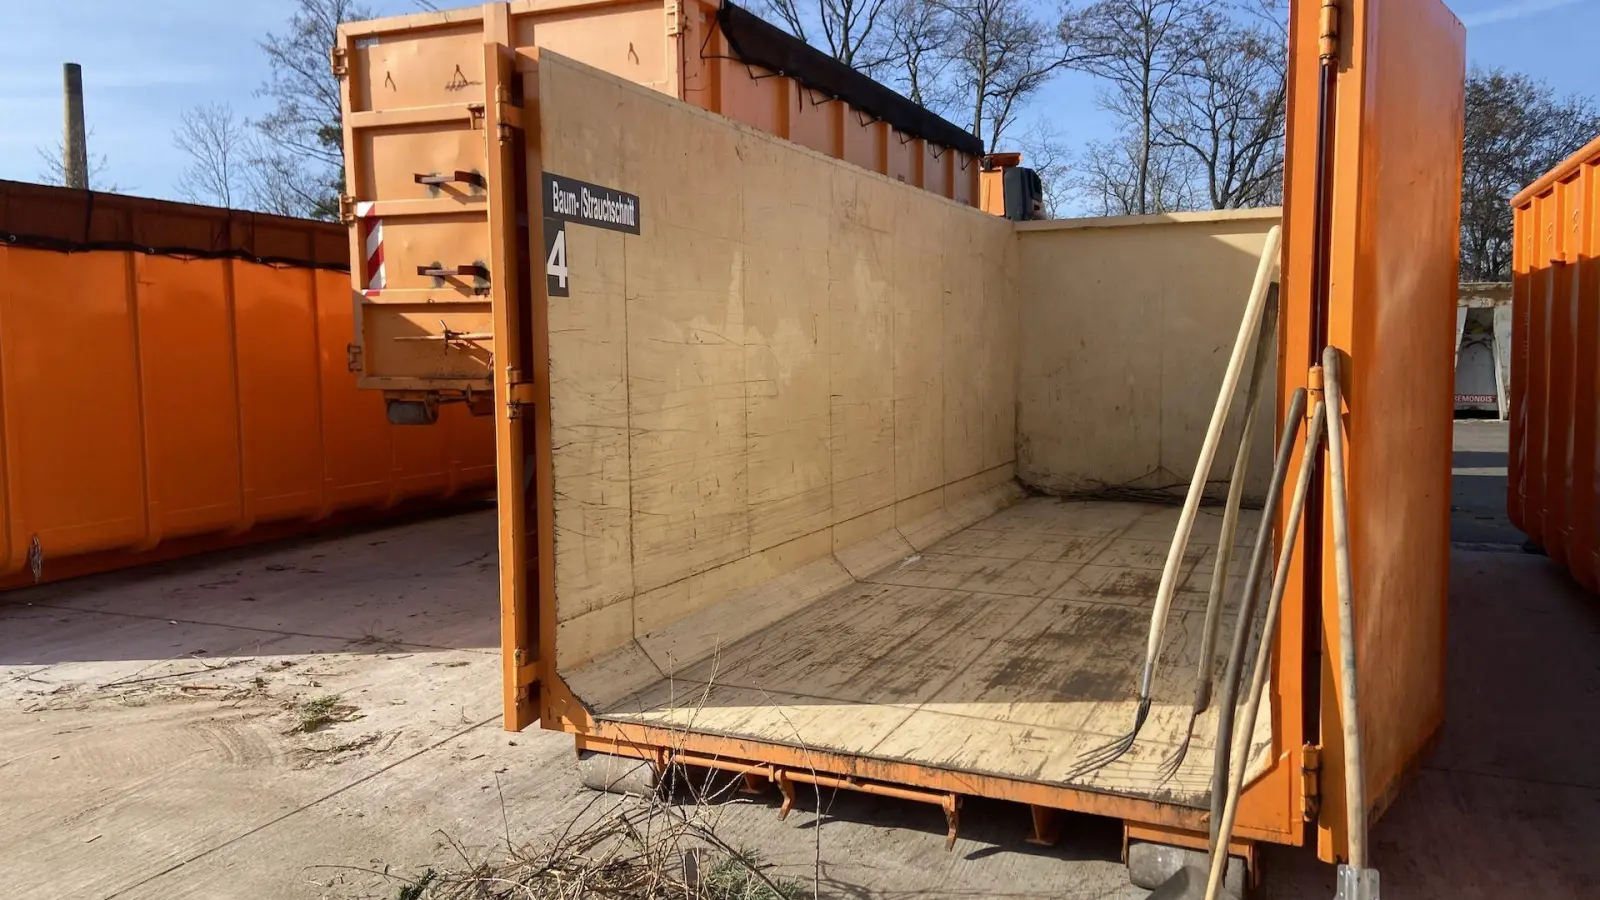 Auch für Baum- und Strauchschnitt stehen diese großen Container zur Verfügung. (Foto: taucha-kompakt.de)